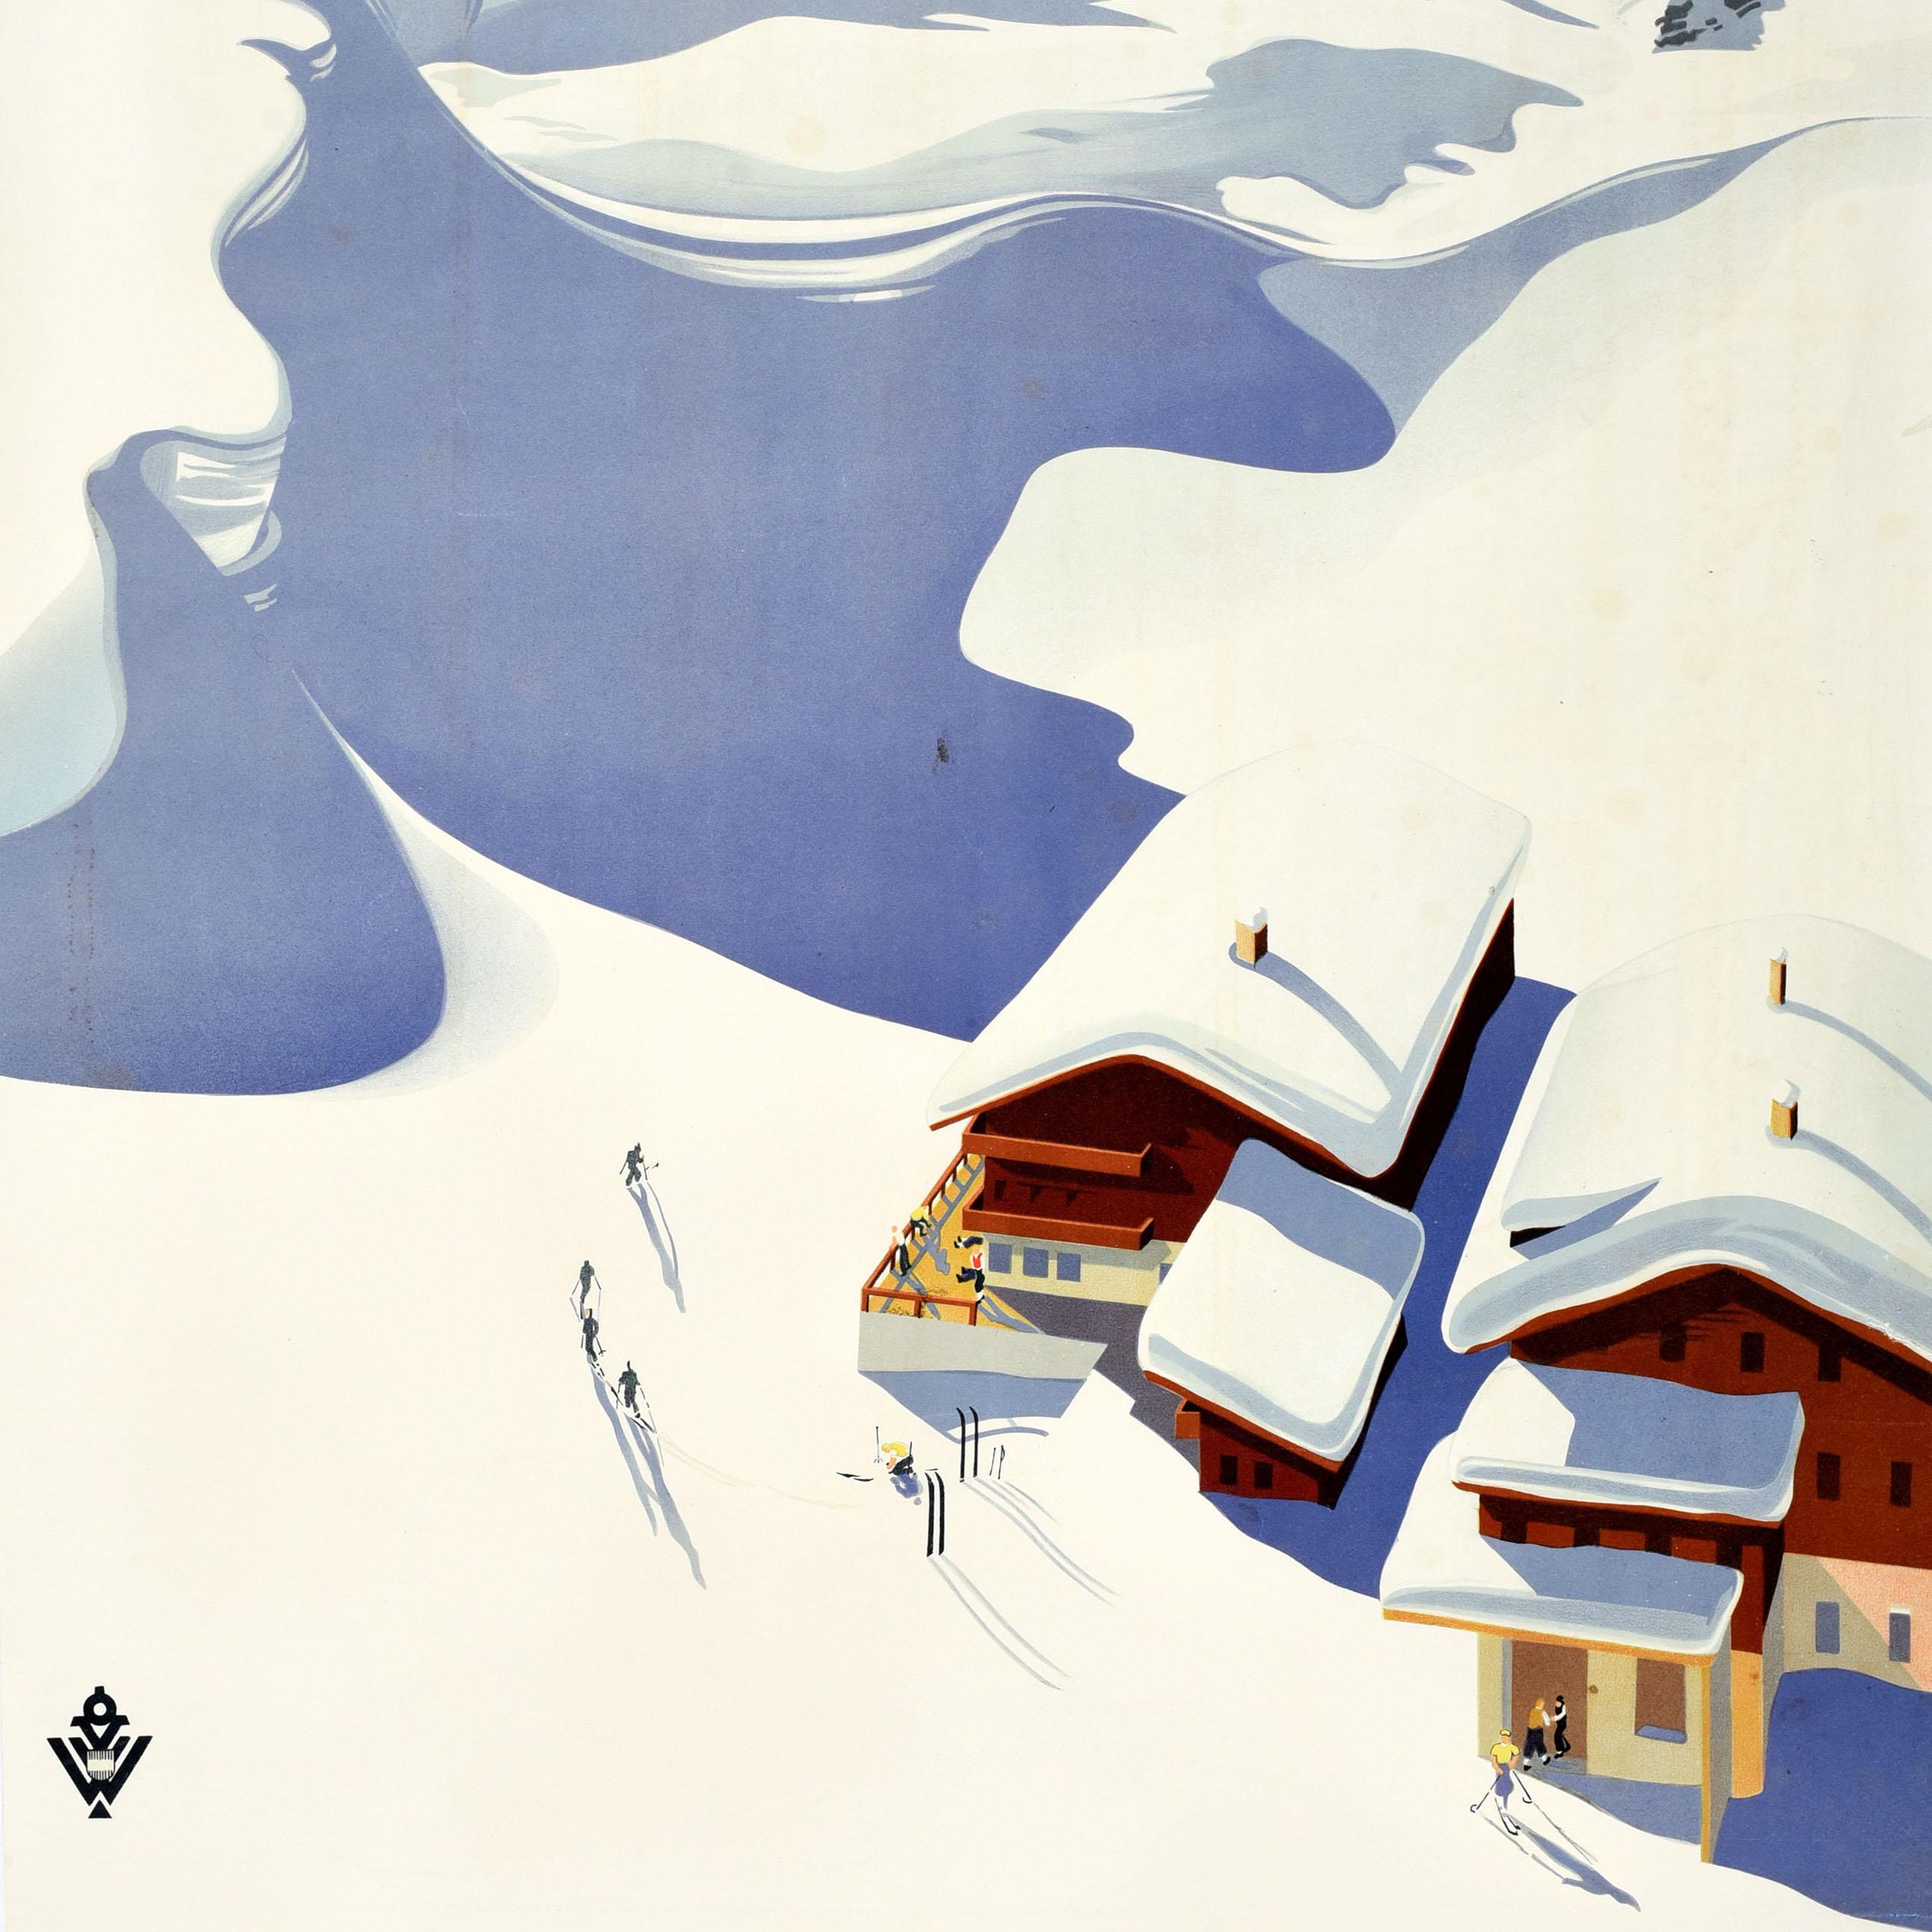 Affiche originale de voyage pour les sports d'hiver et le ski en Autriche, réalisée par Erich von Wunschheim, représentant des skieurs sur une montagne enneigée à côté de chalets enneigés avec des personnes sur la terrasse et des skis dans la neige